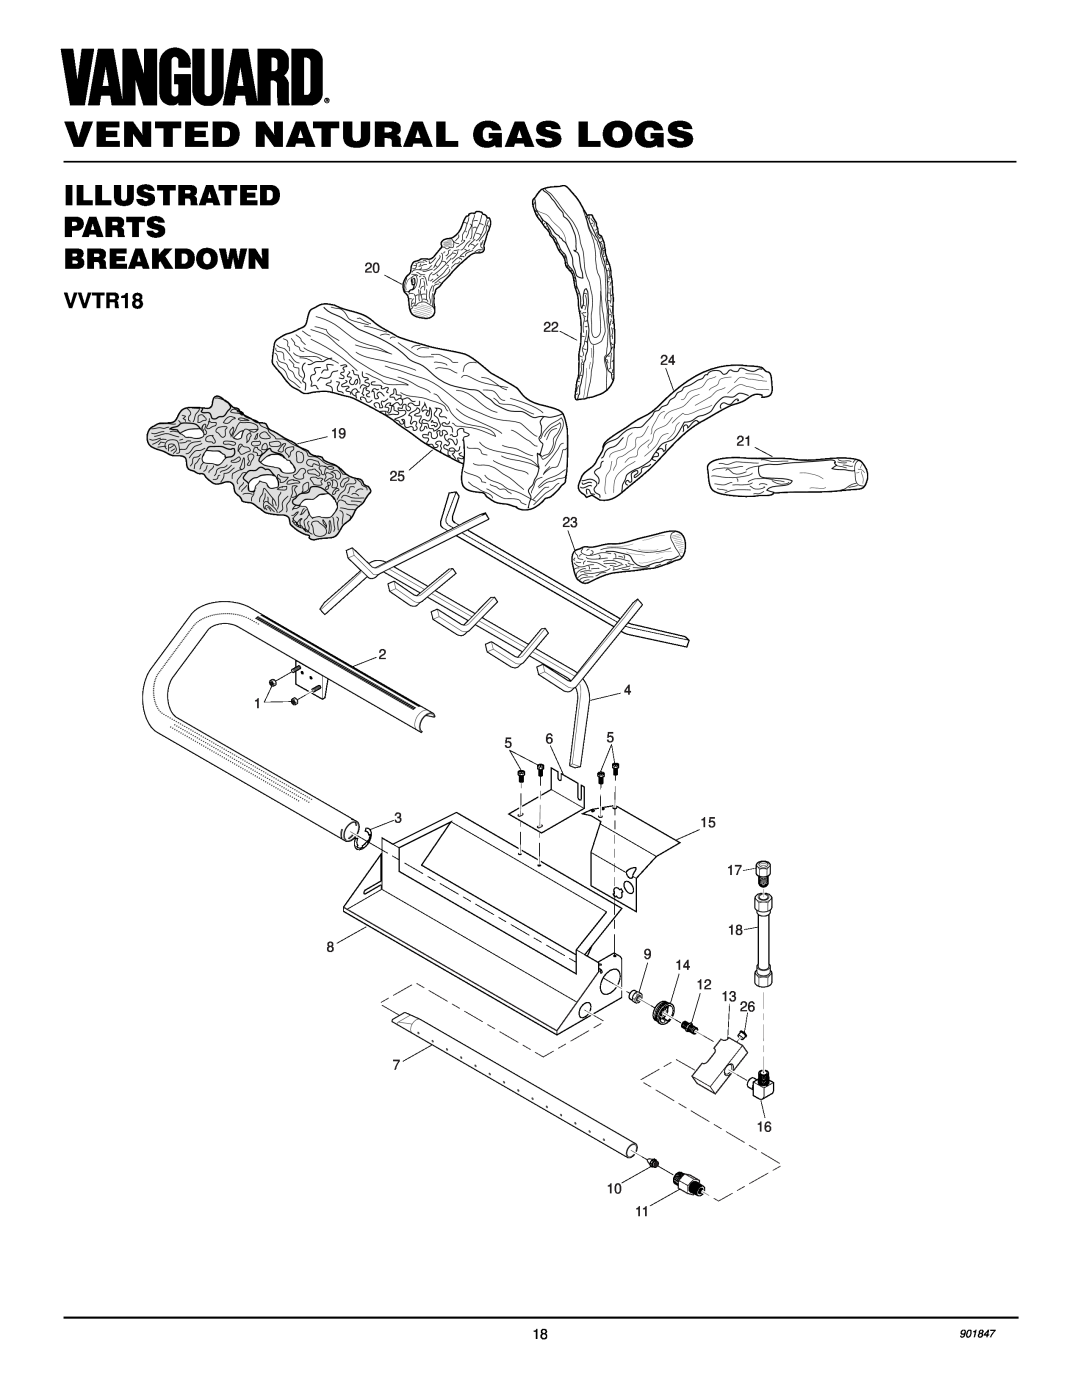 Desa VVTR24 installation manual Illustrated Parts Breakdown, Vented Natural Gas Logs, VVTR18, 901847 